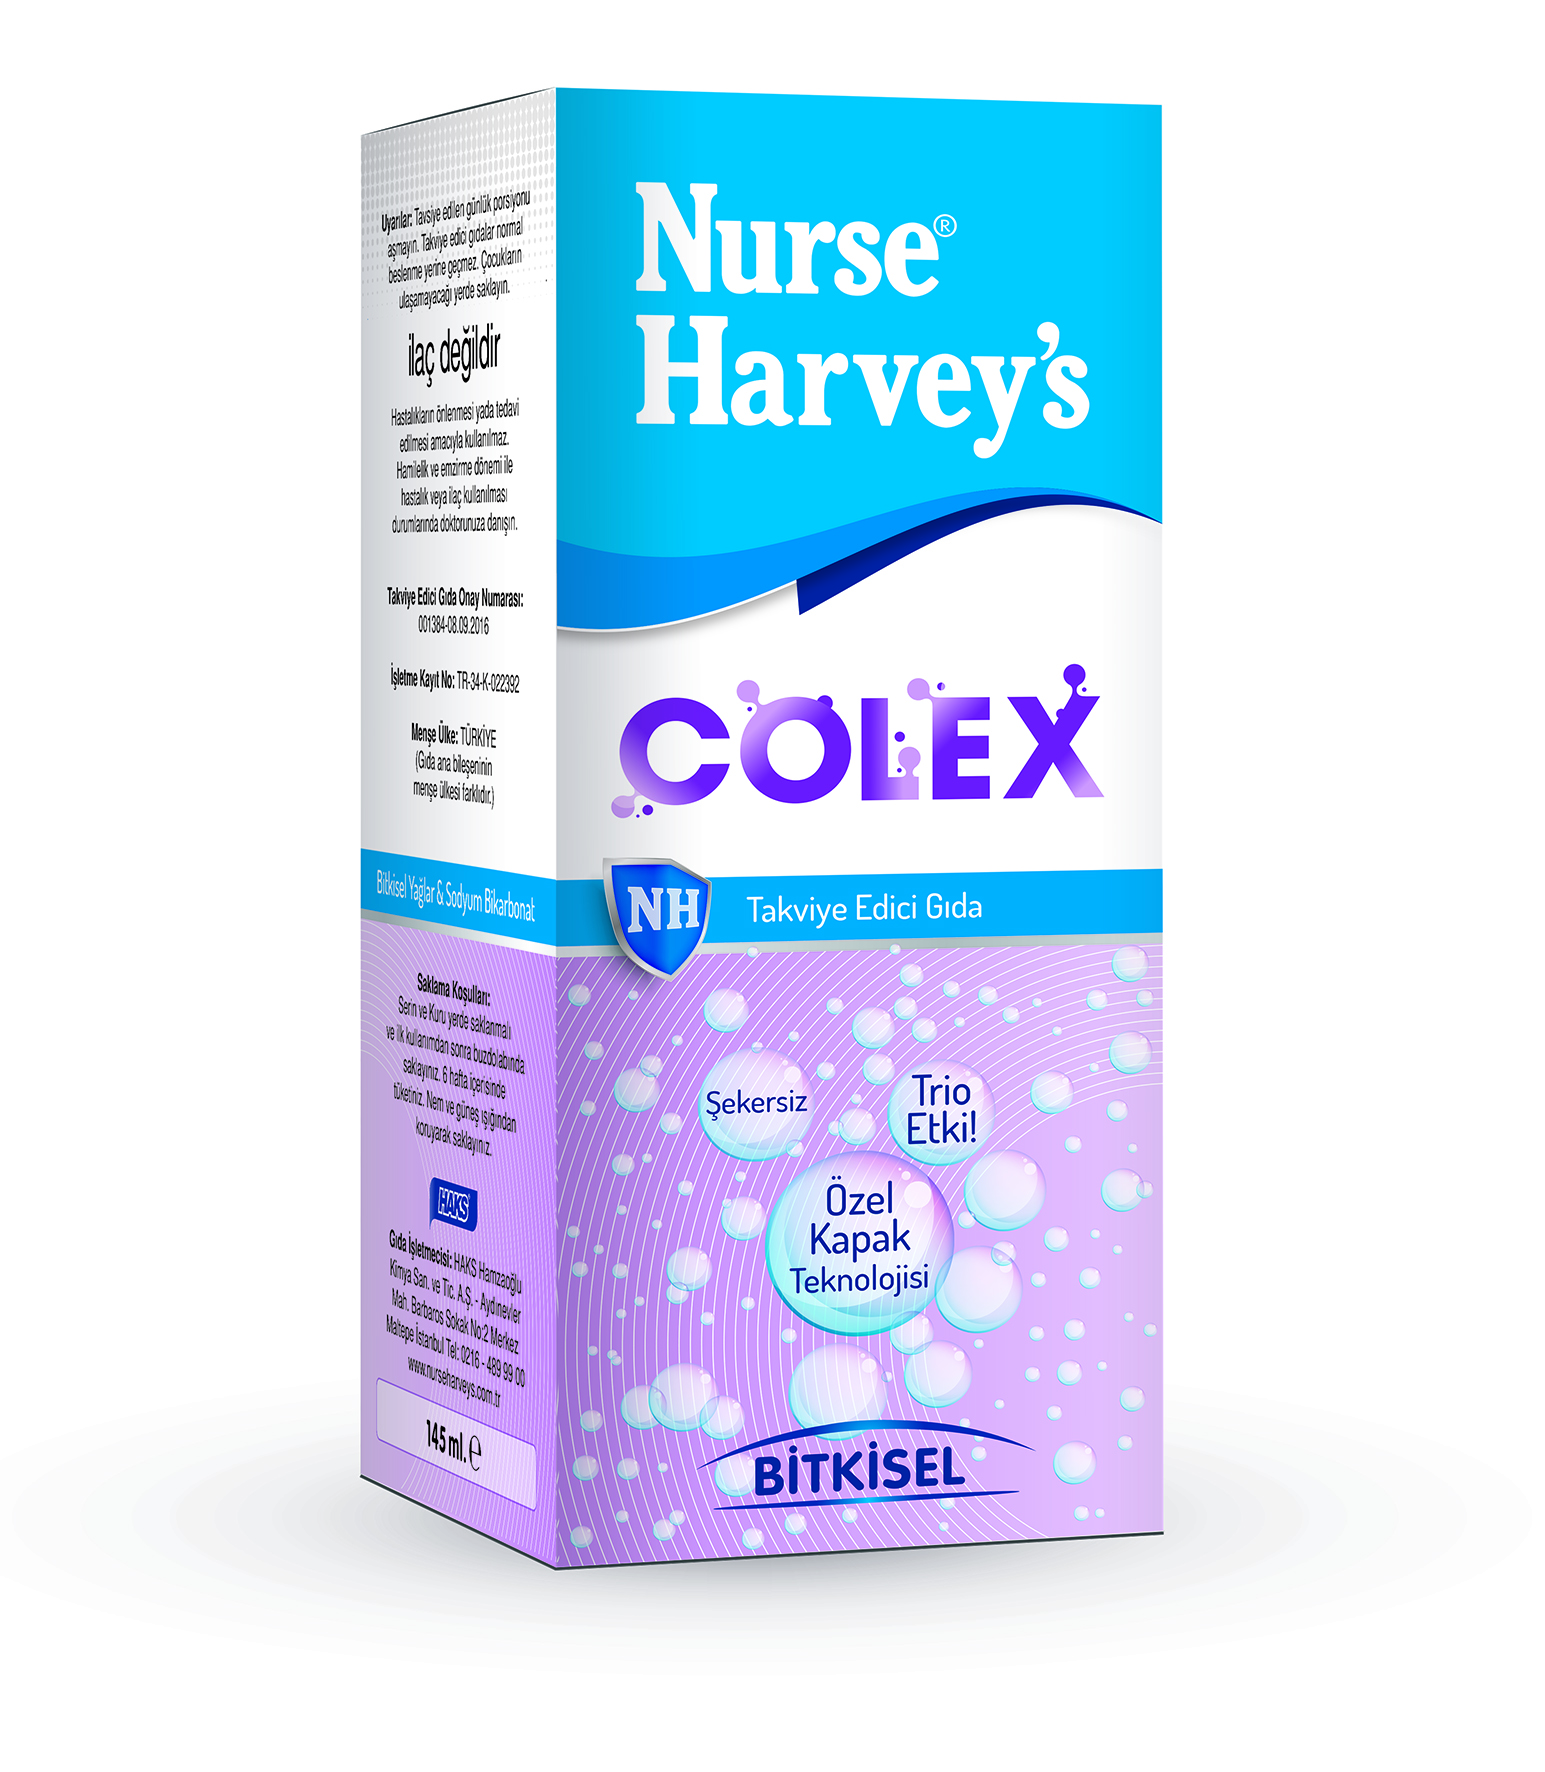 Nurse Harvey's Colex